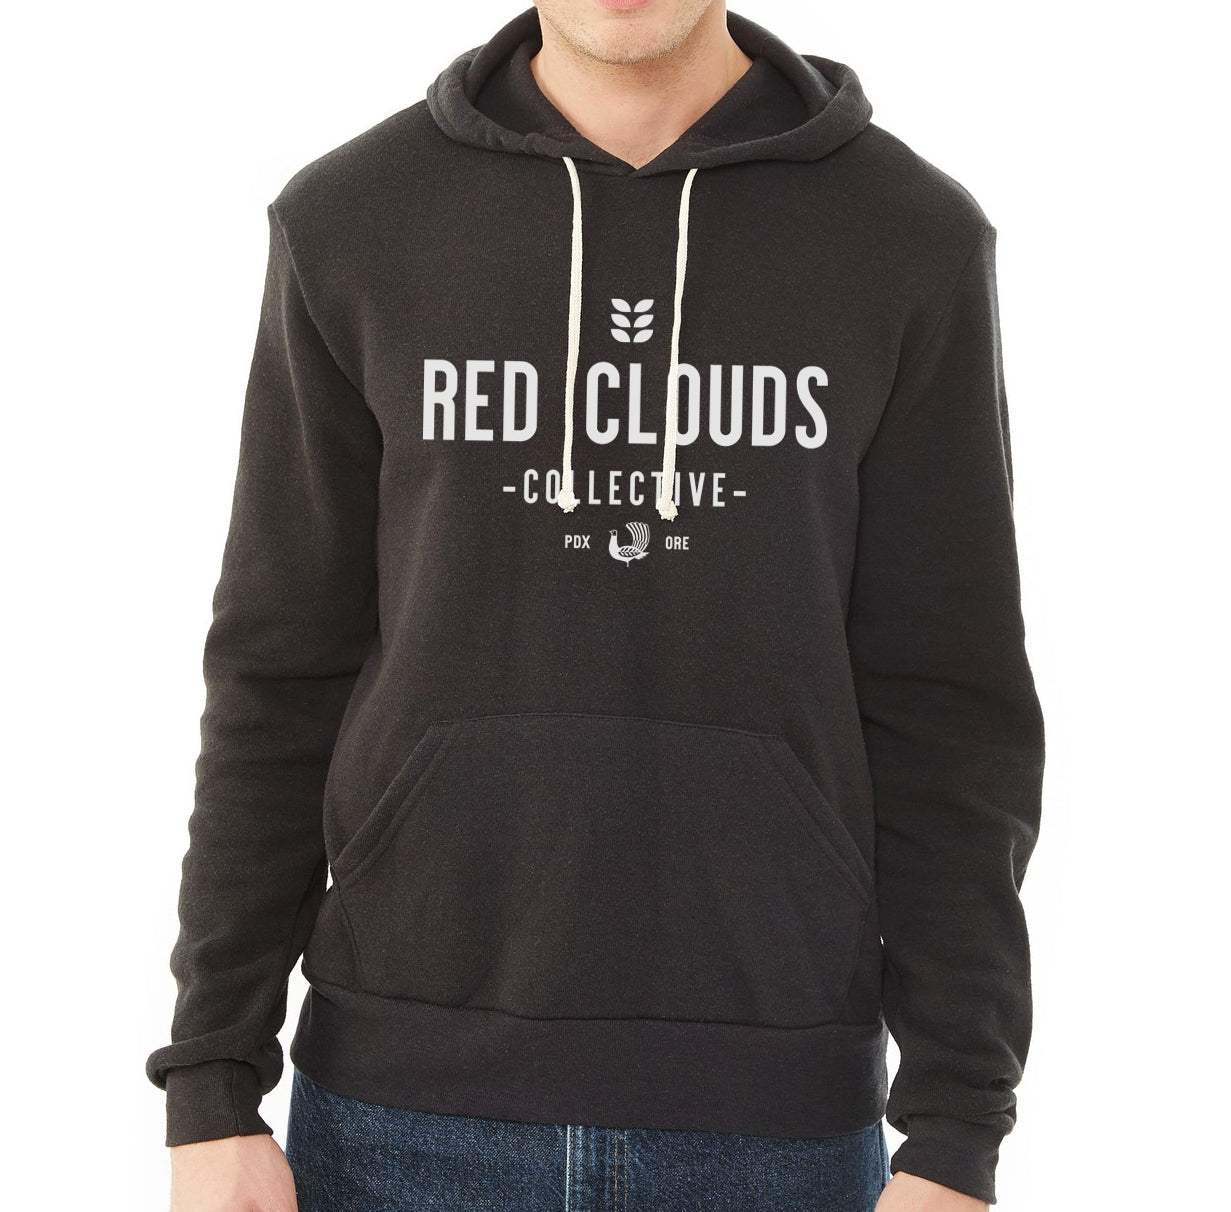 red clouds sweatshirt, hoodie, hoody, black sweatshirt, made in usa, made in portland, red clouds collective, rcc hoodie